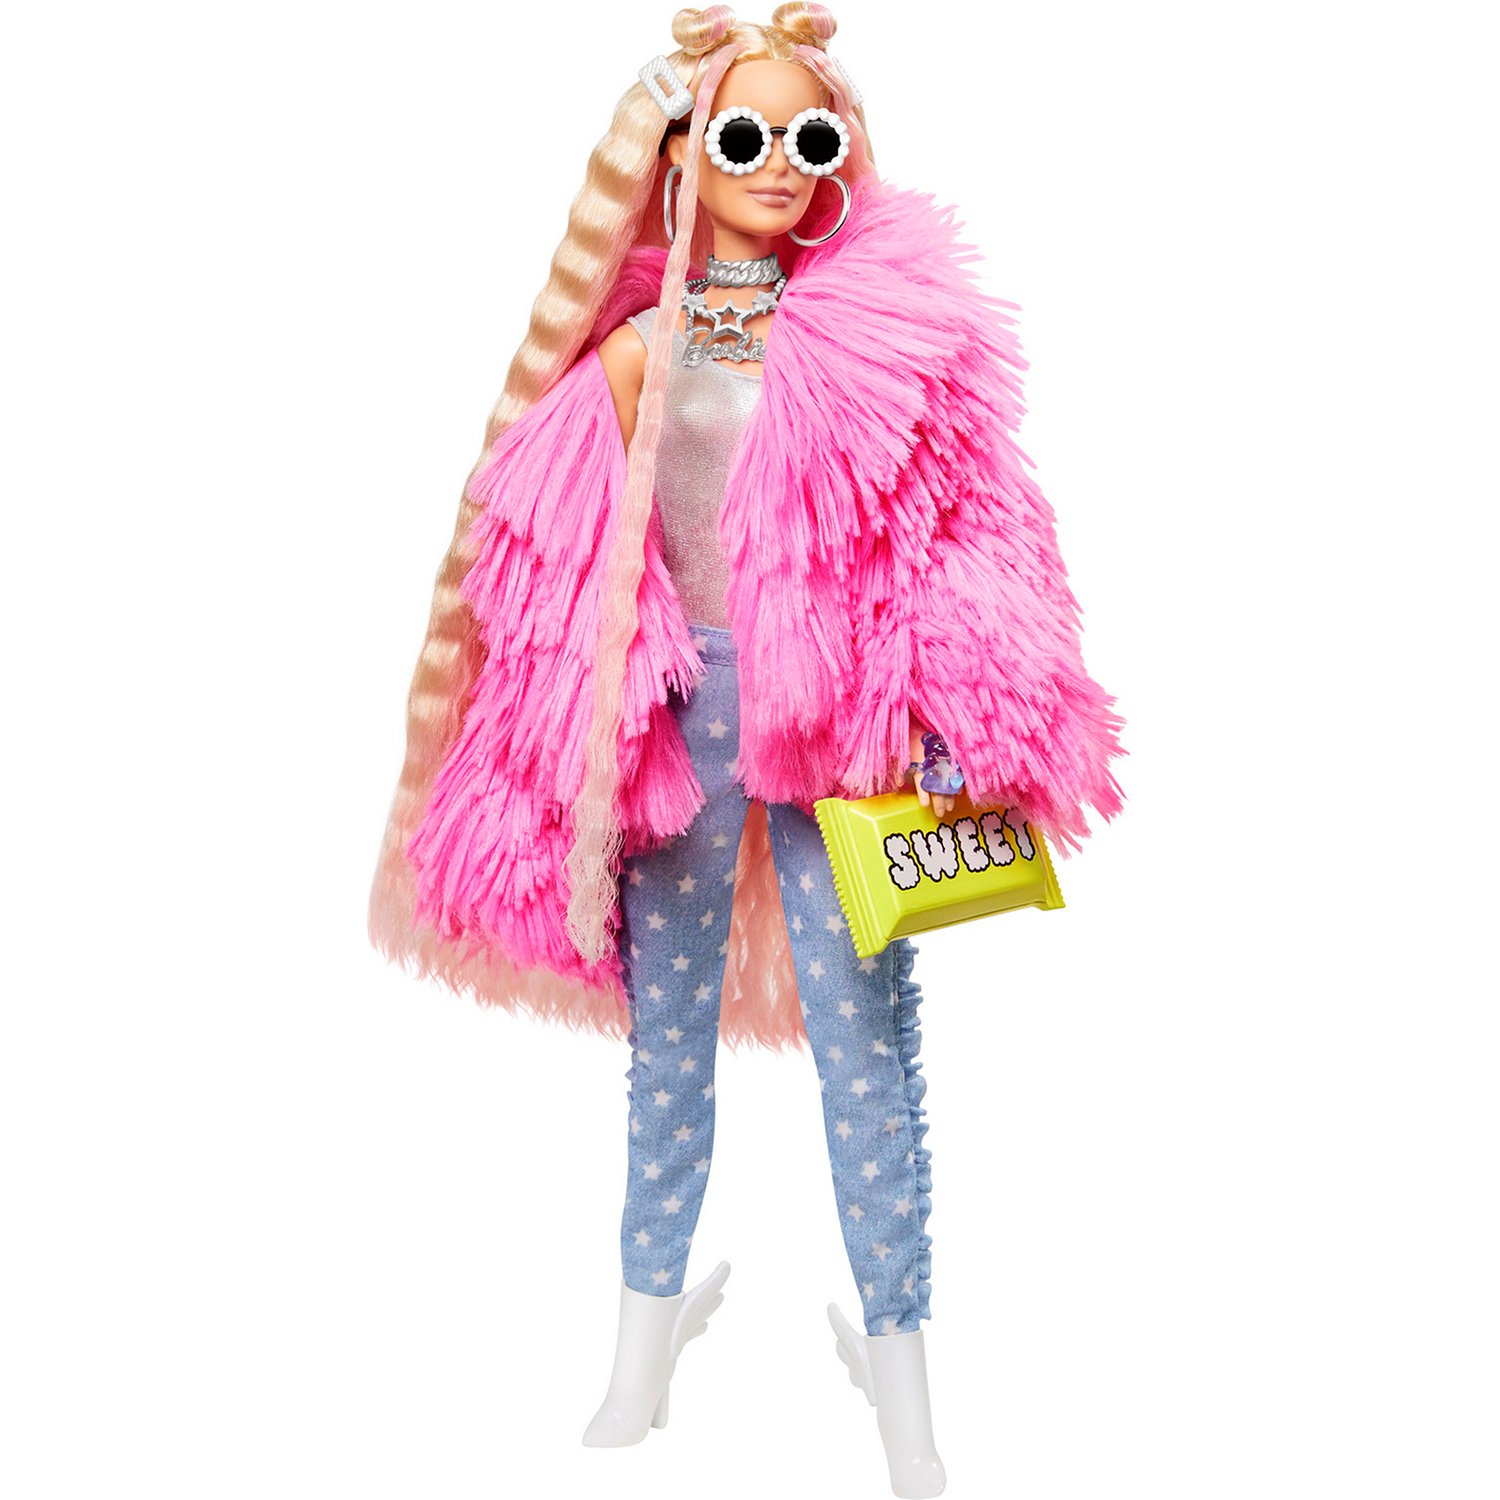 Кукла Barbie Экстра в розовой куртке GRN28